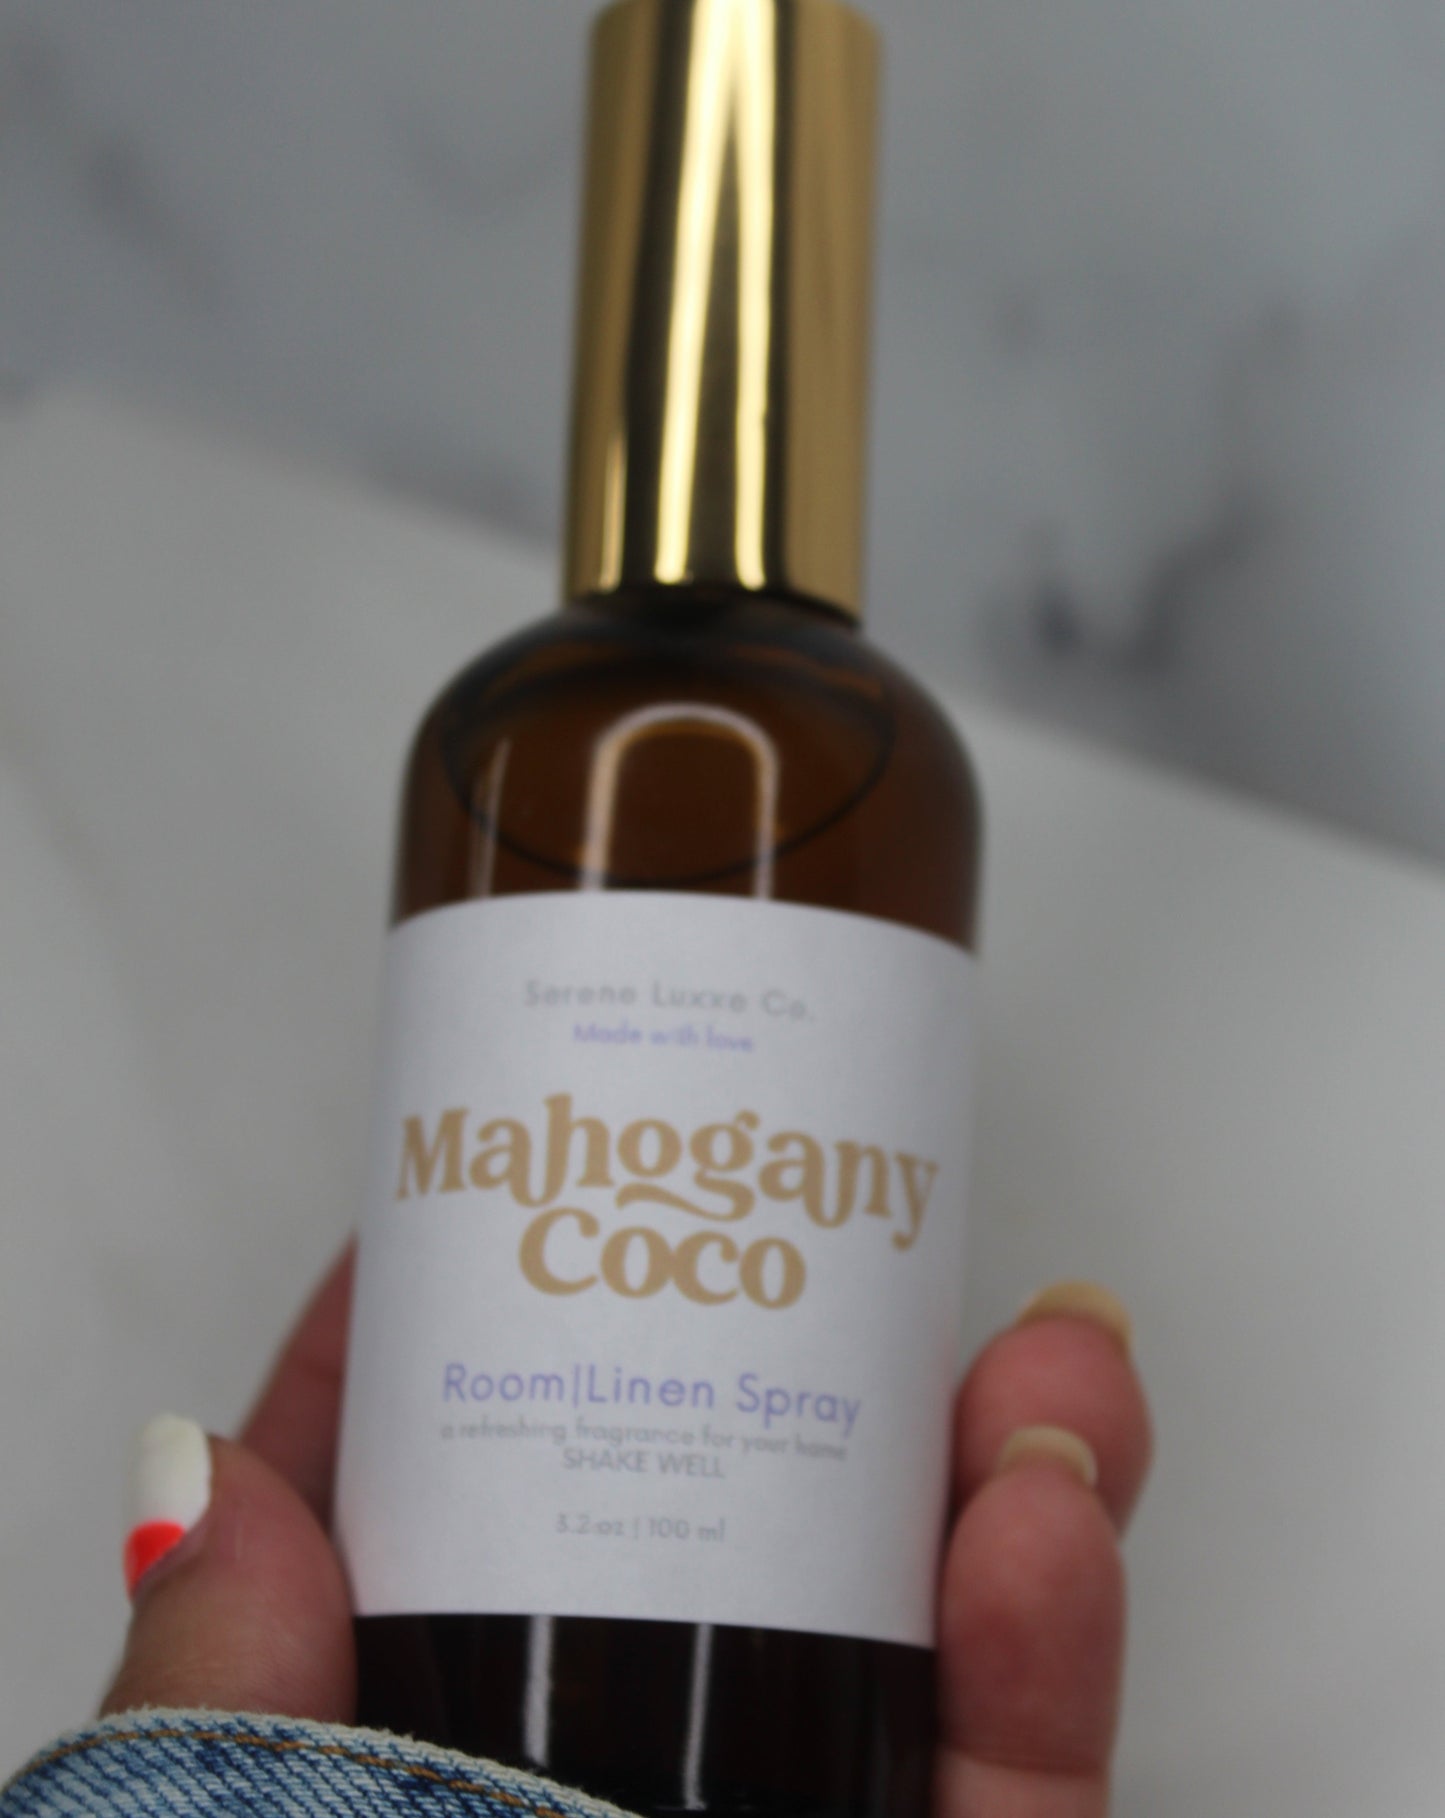 Mahogany Coco Room Spray